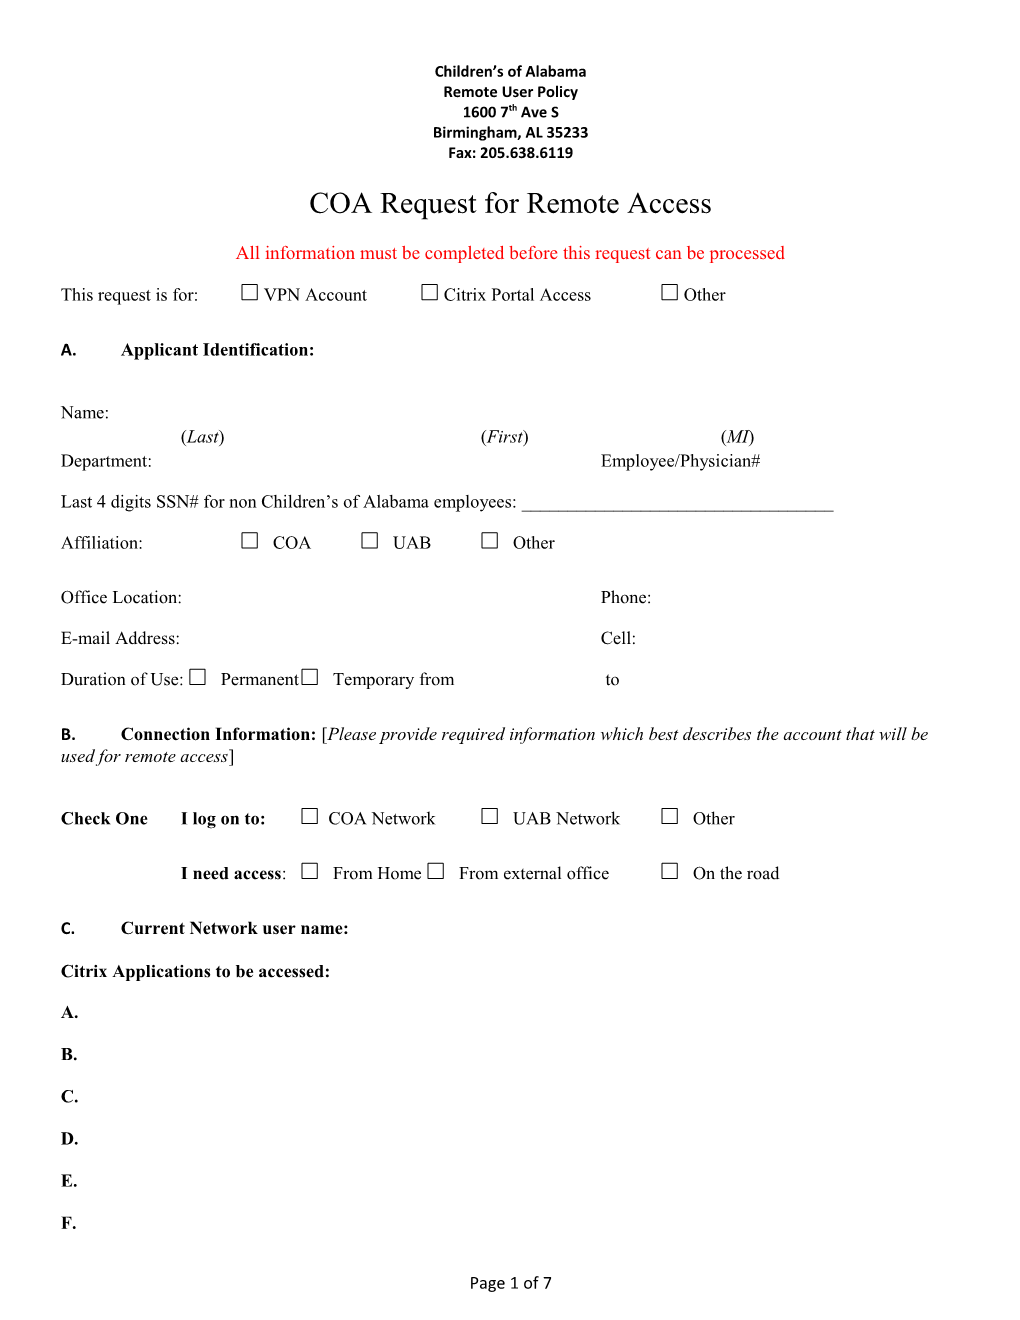 COA Request for Remote Access